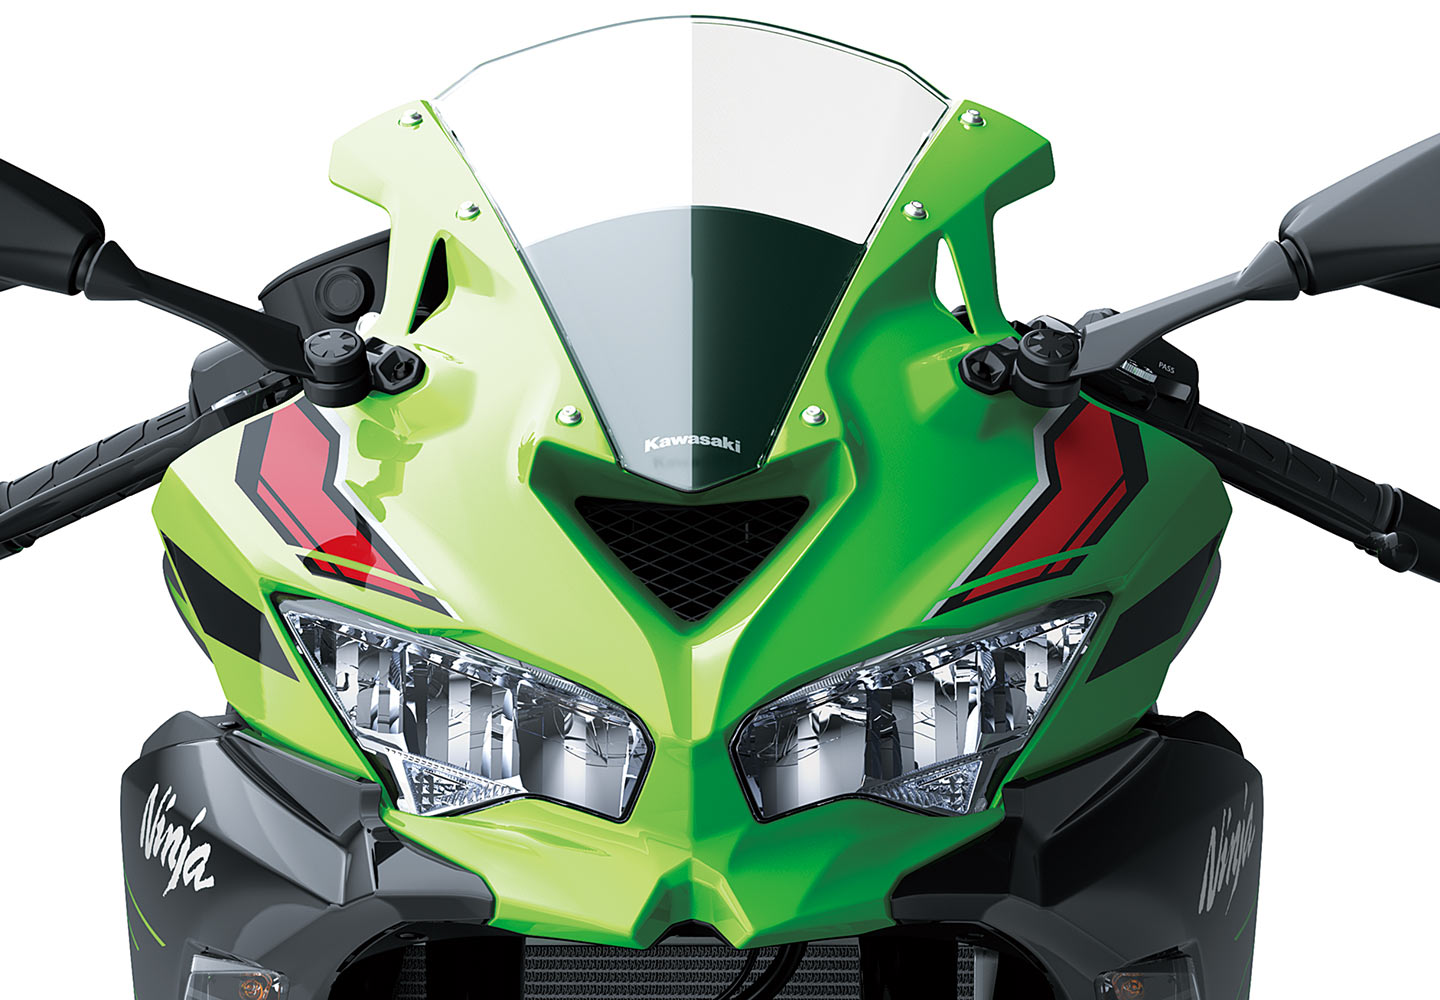 Kawasaki Ninja ZX-4R |スーパースポーツモデル|並列4気筒エンジンを 